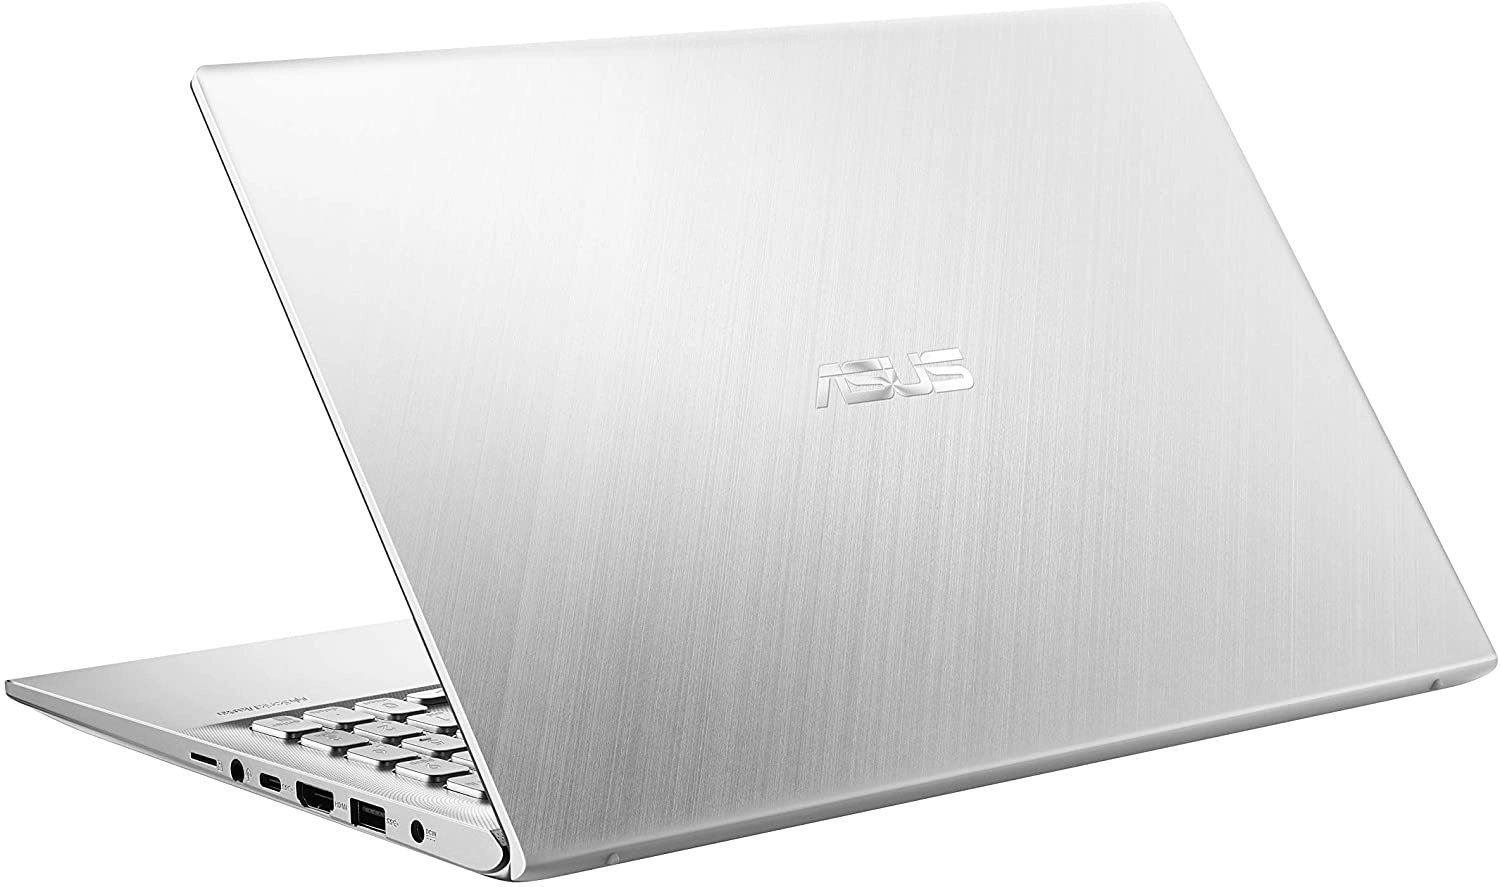 Asus S512JA-BQ1028 laptop image